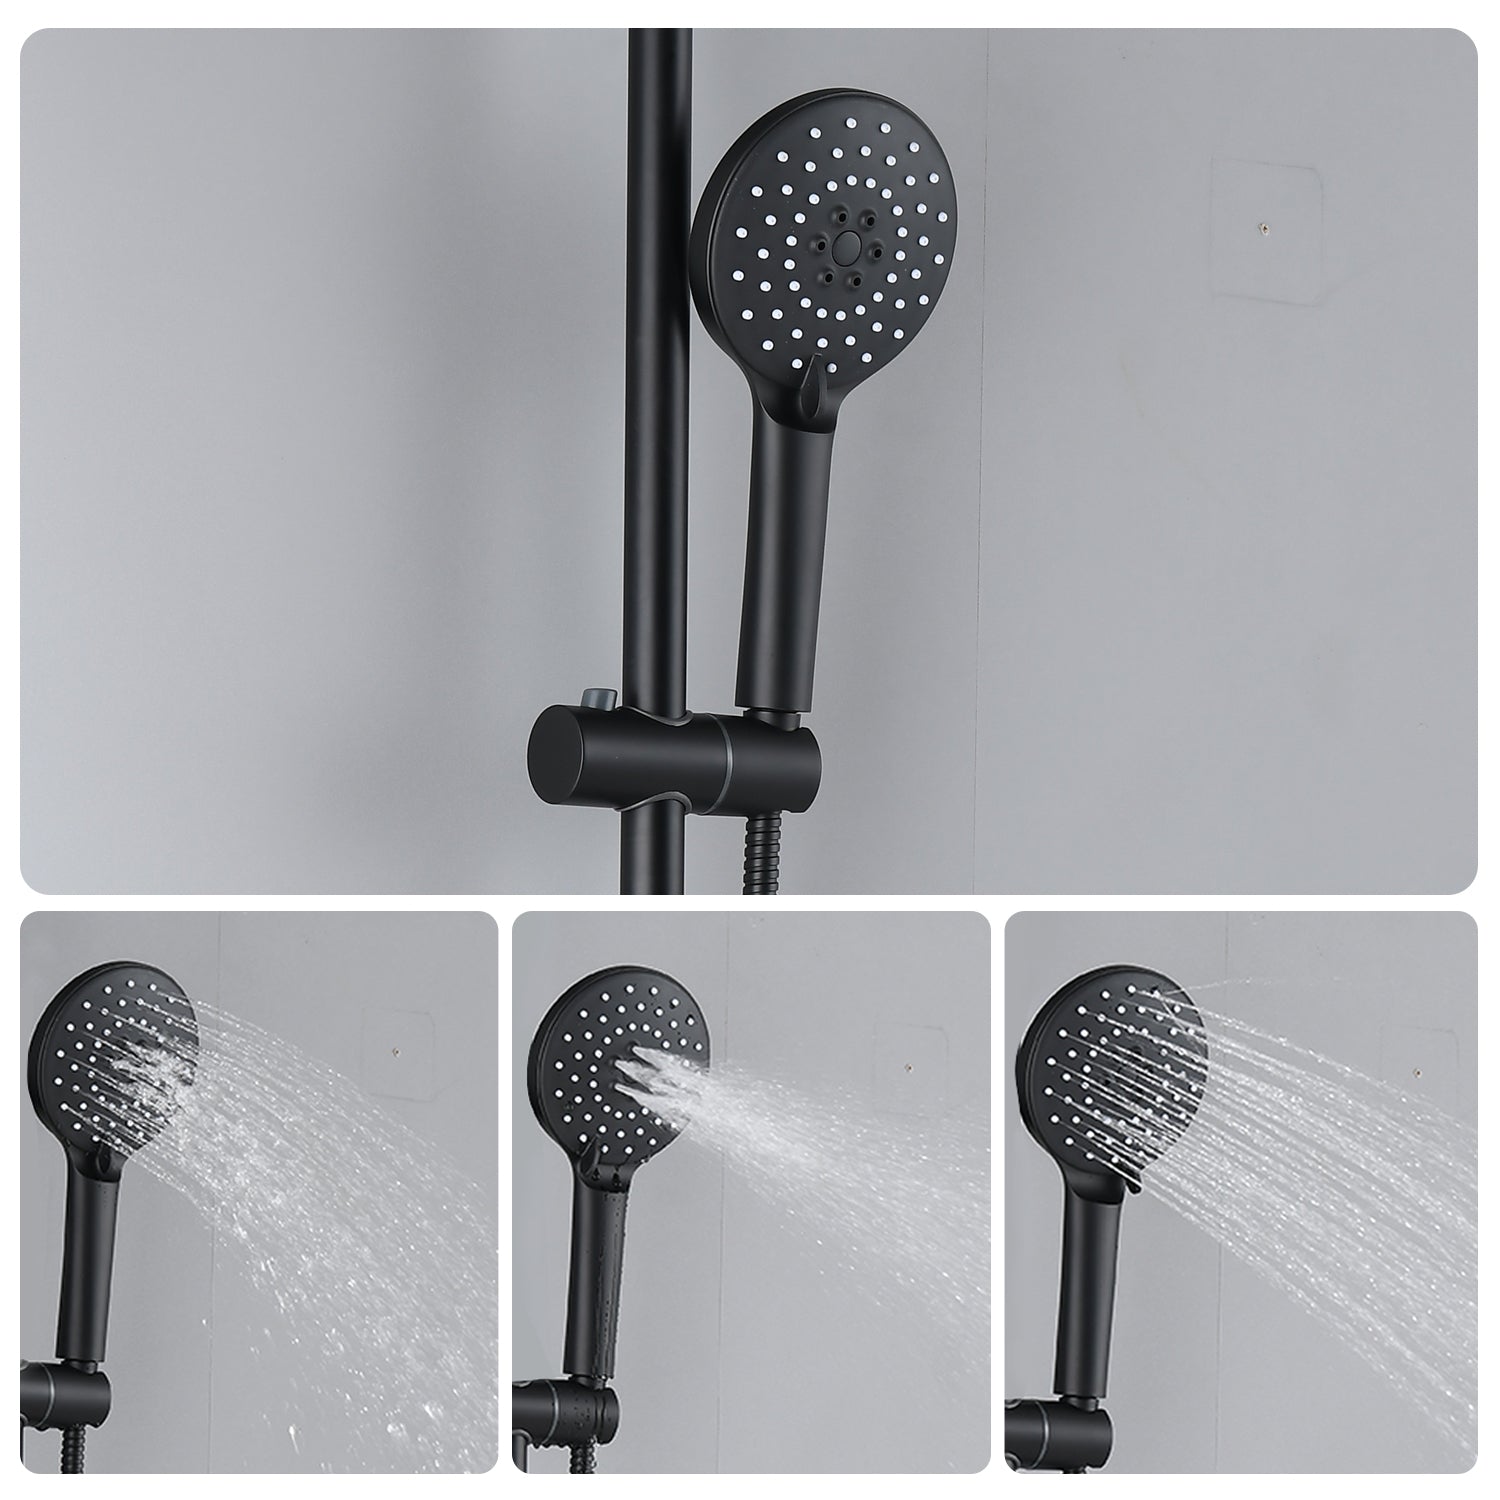 3 spray patterns handheld shower